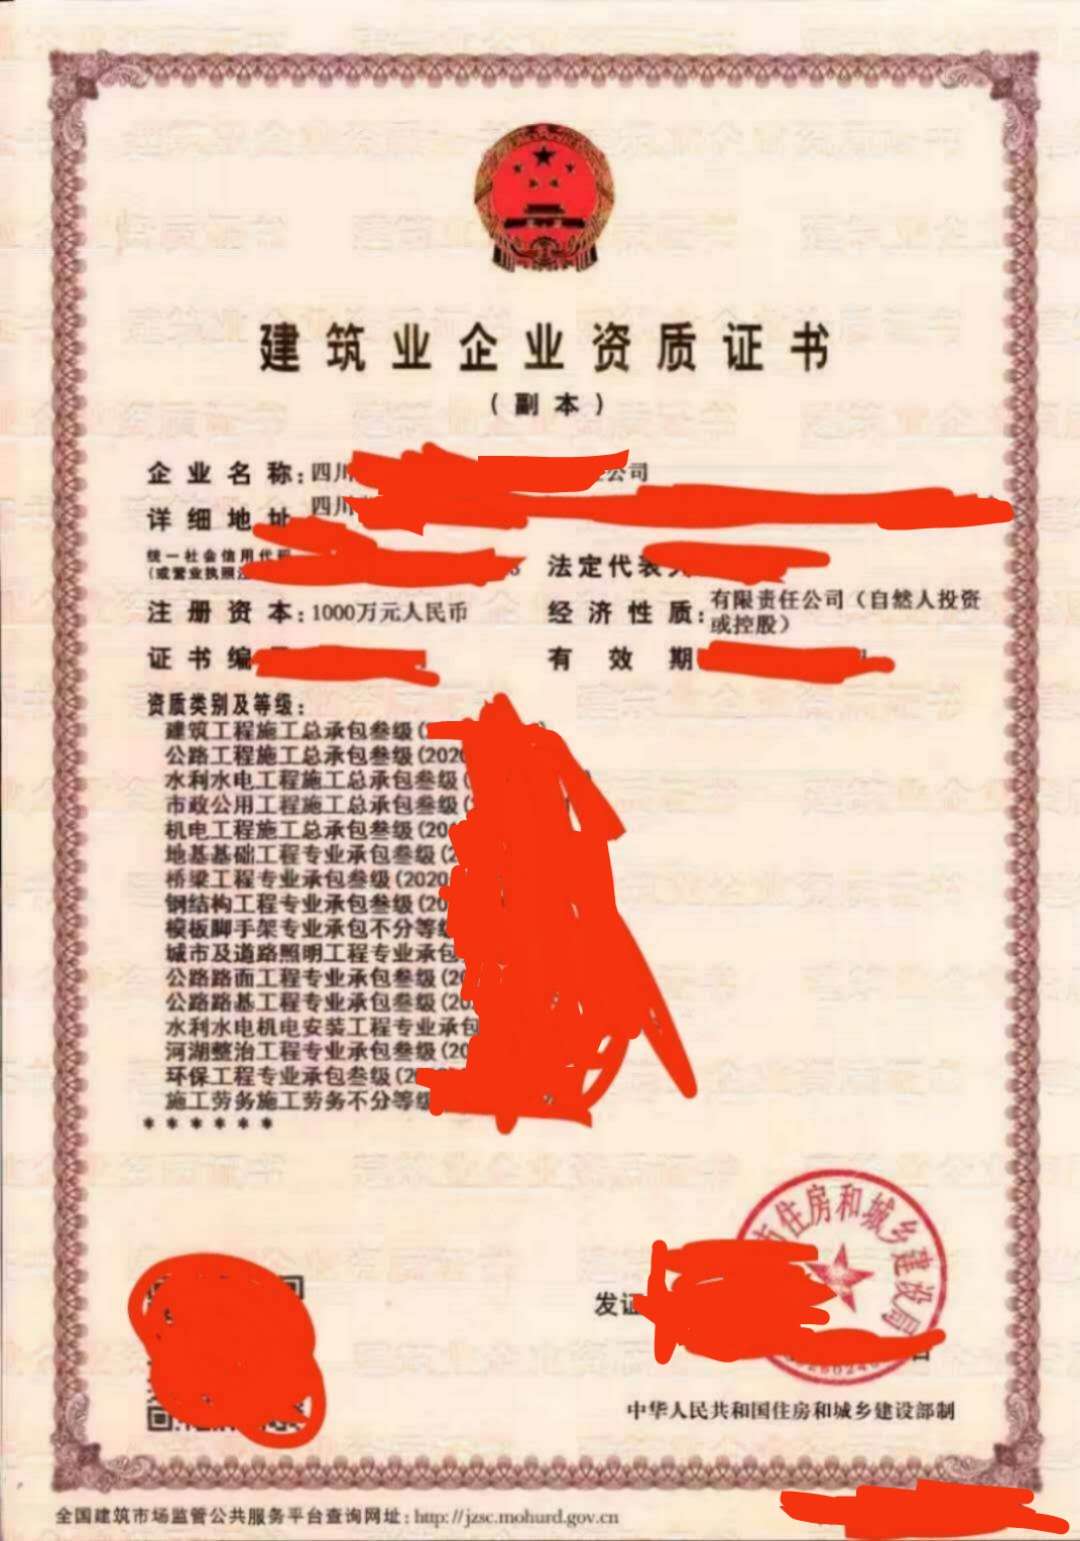 蒲江县办理安全生产许可证延期